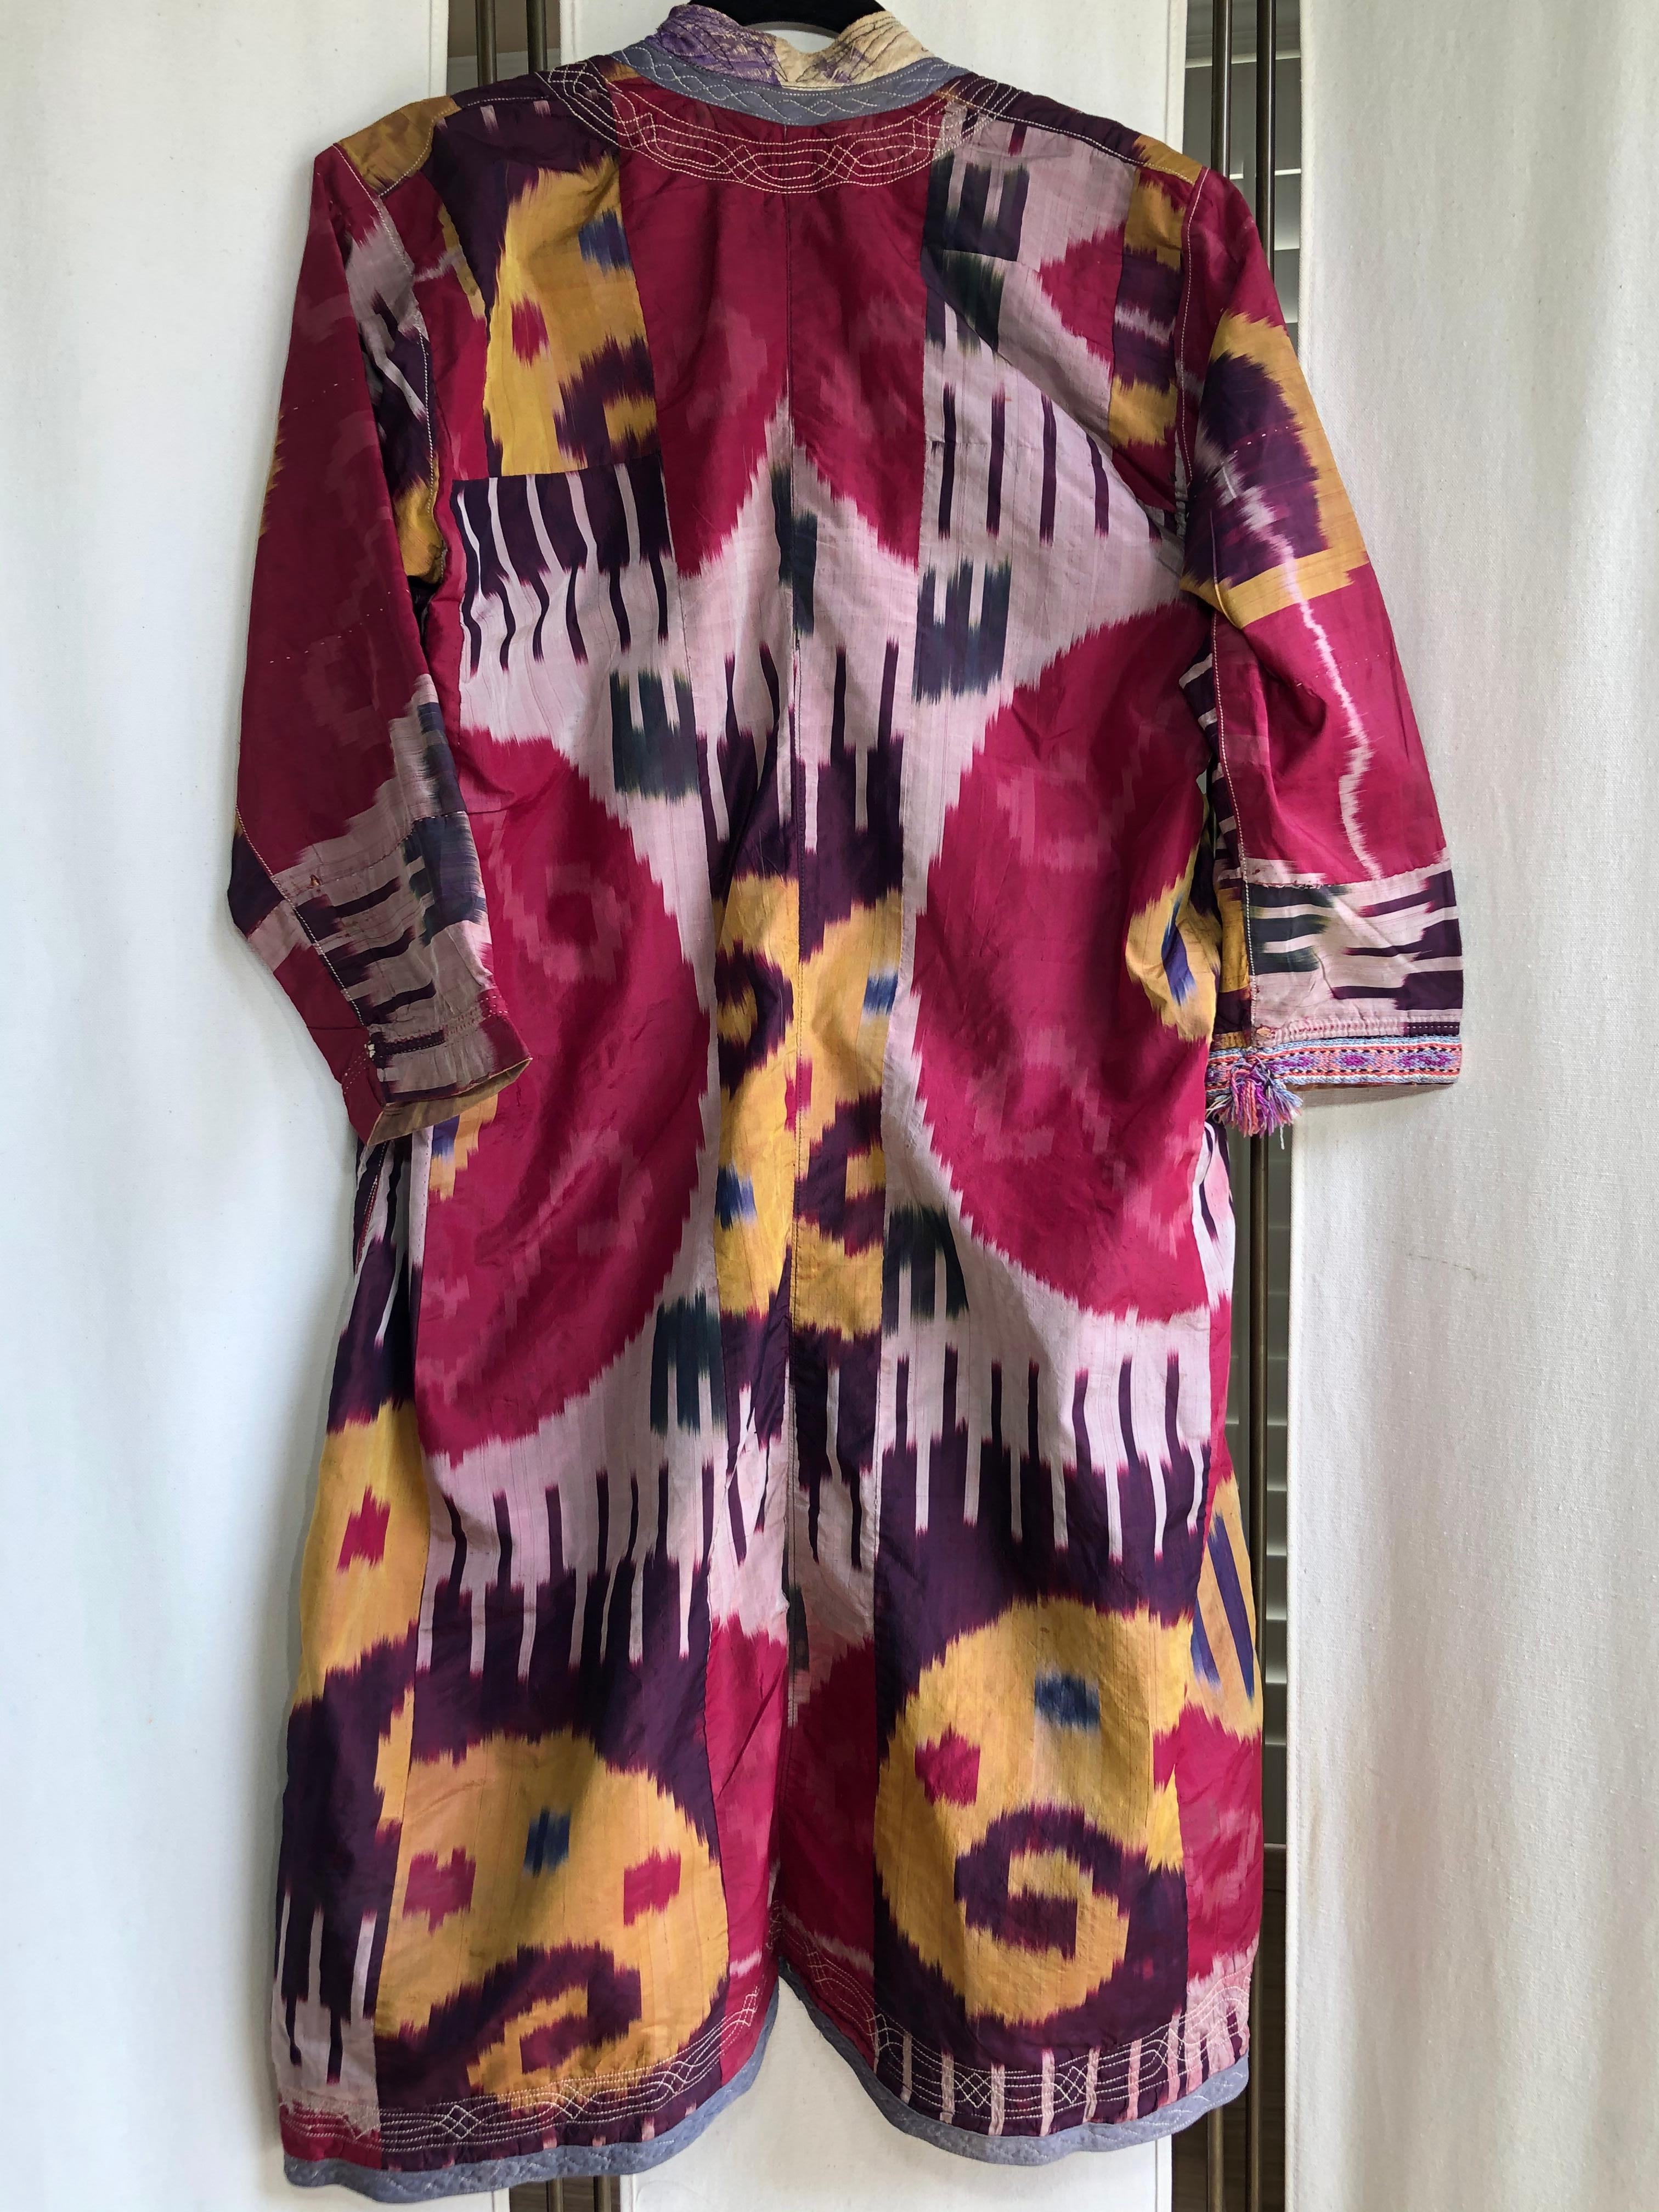 Magnifique robe ouzbèke ancienne en soie Ikat teintée, lumineuse et colorée. L'usure est mineure, comme le montrent les photos. Couleurs : Fuchsia, rose pâle, violet, jaune et bleu.
Environ taille moyenne-large
Taille de l'épaule 17